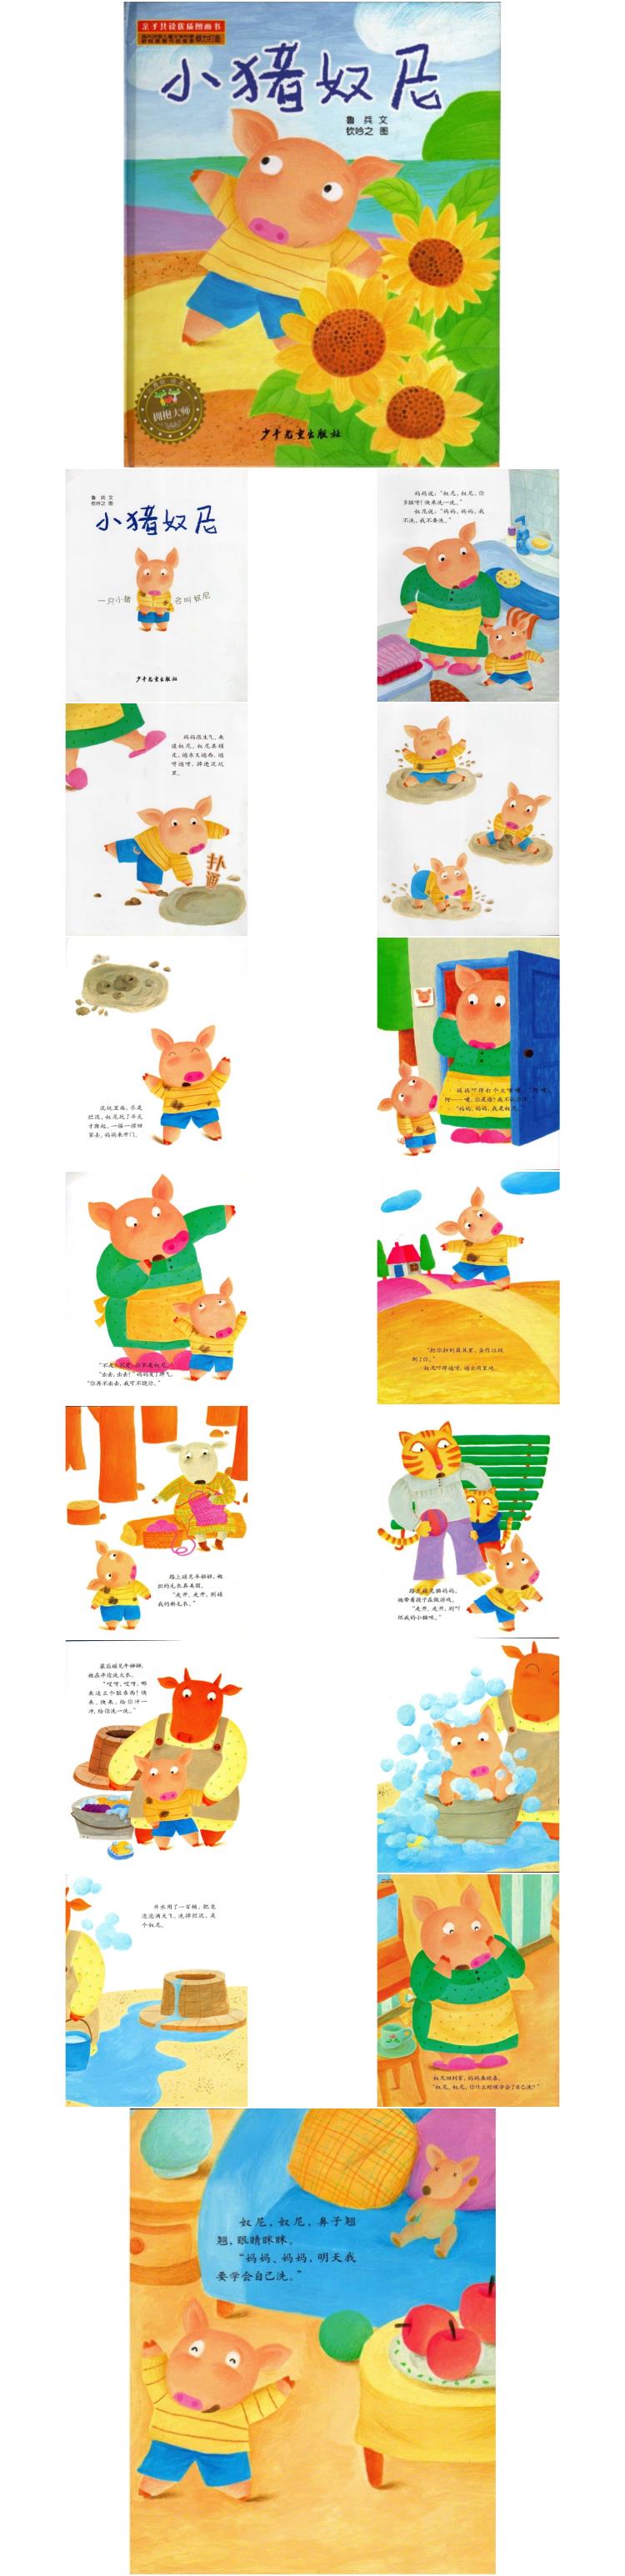 《小猪奴尼》童话绘本儿童故事PPT